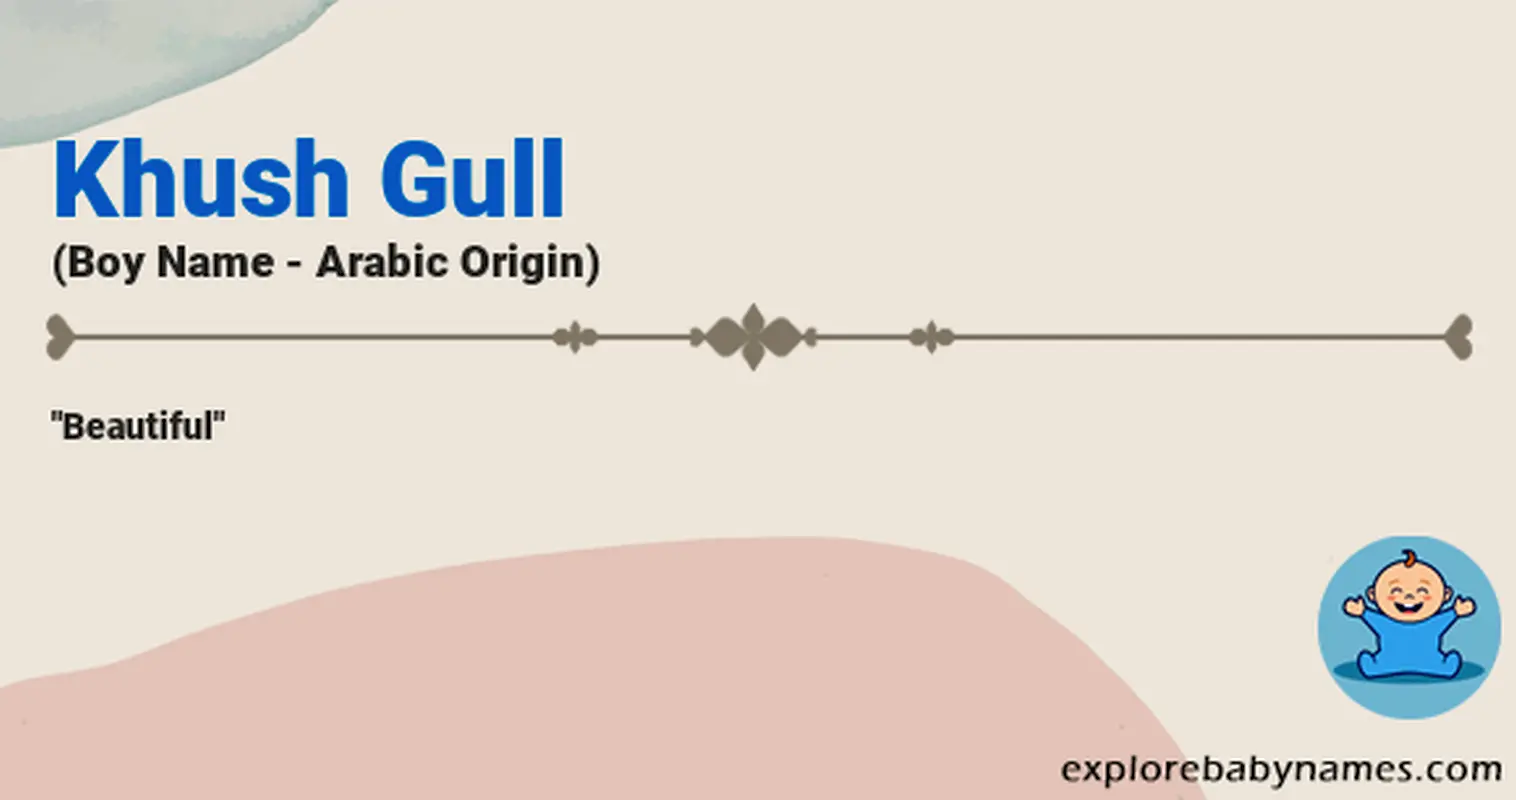 Meaning of Khush Gull